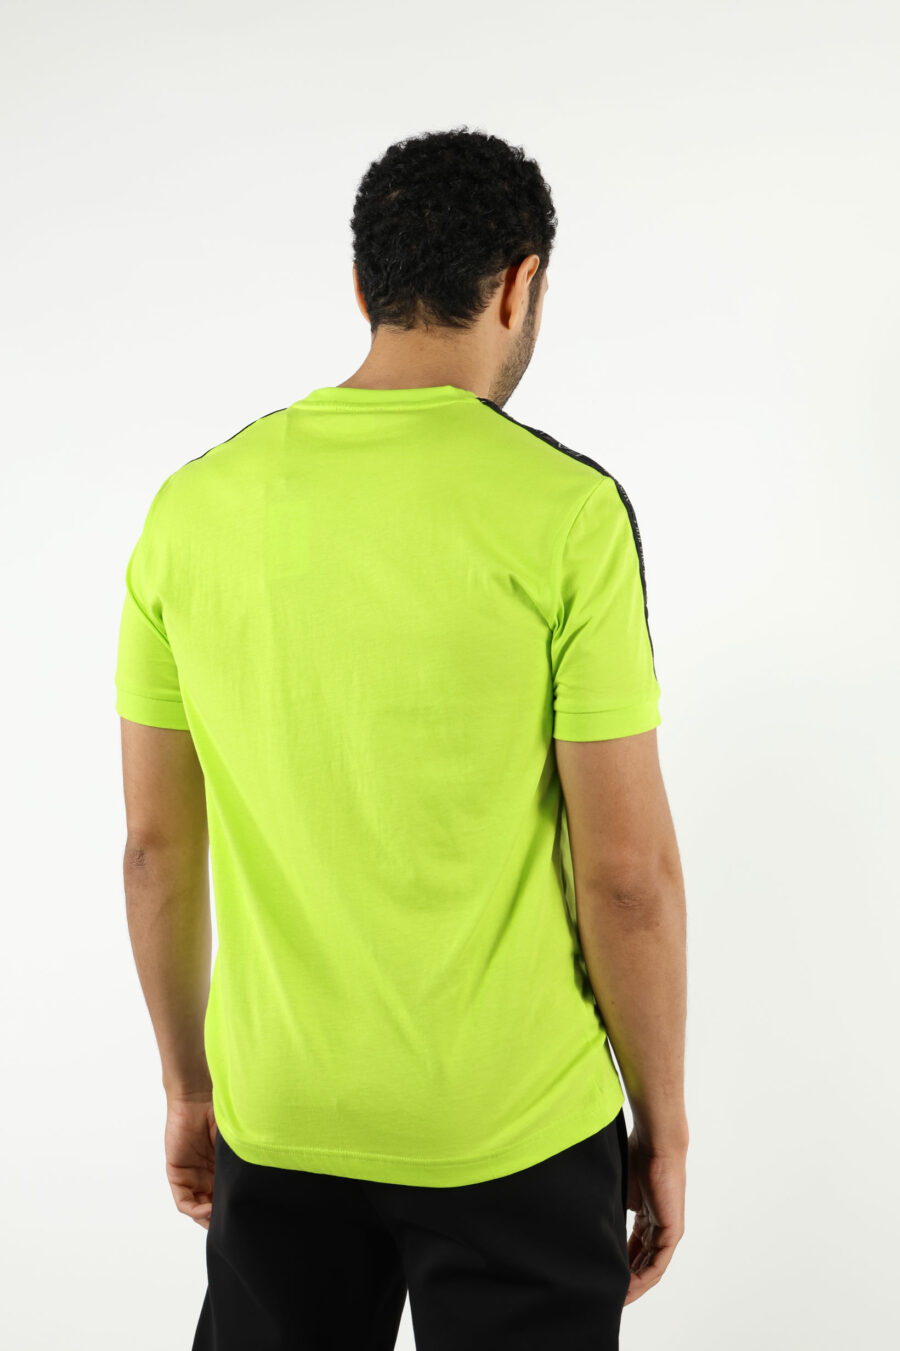 T-shirt vert citron avec mini-bande logo "lux identity" noire - 110952